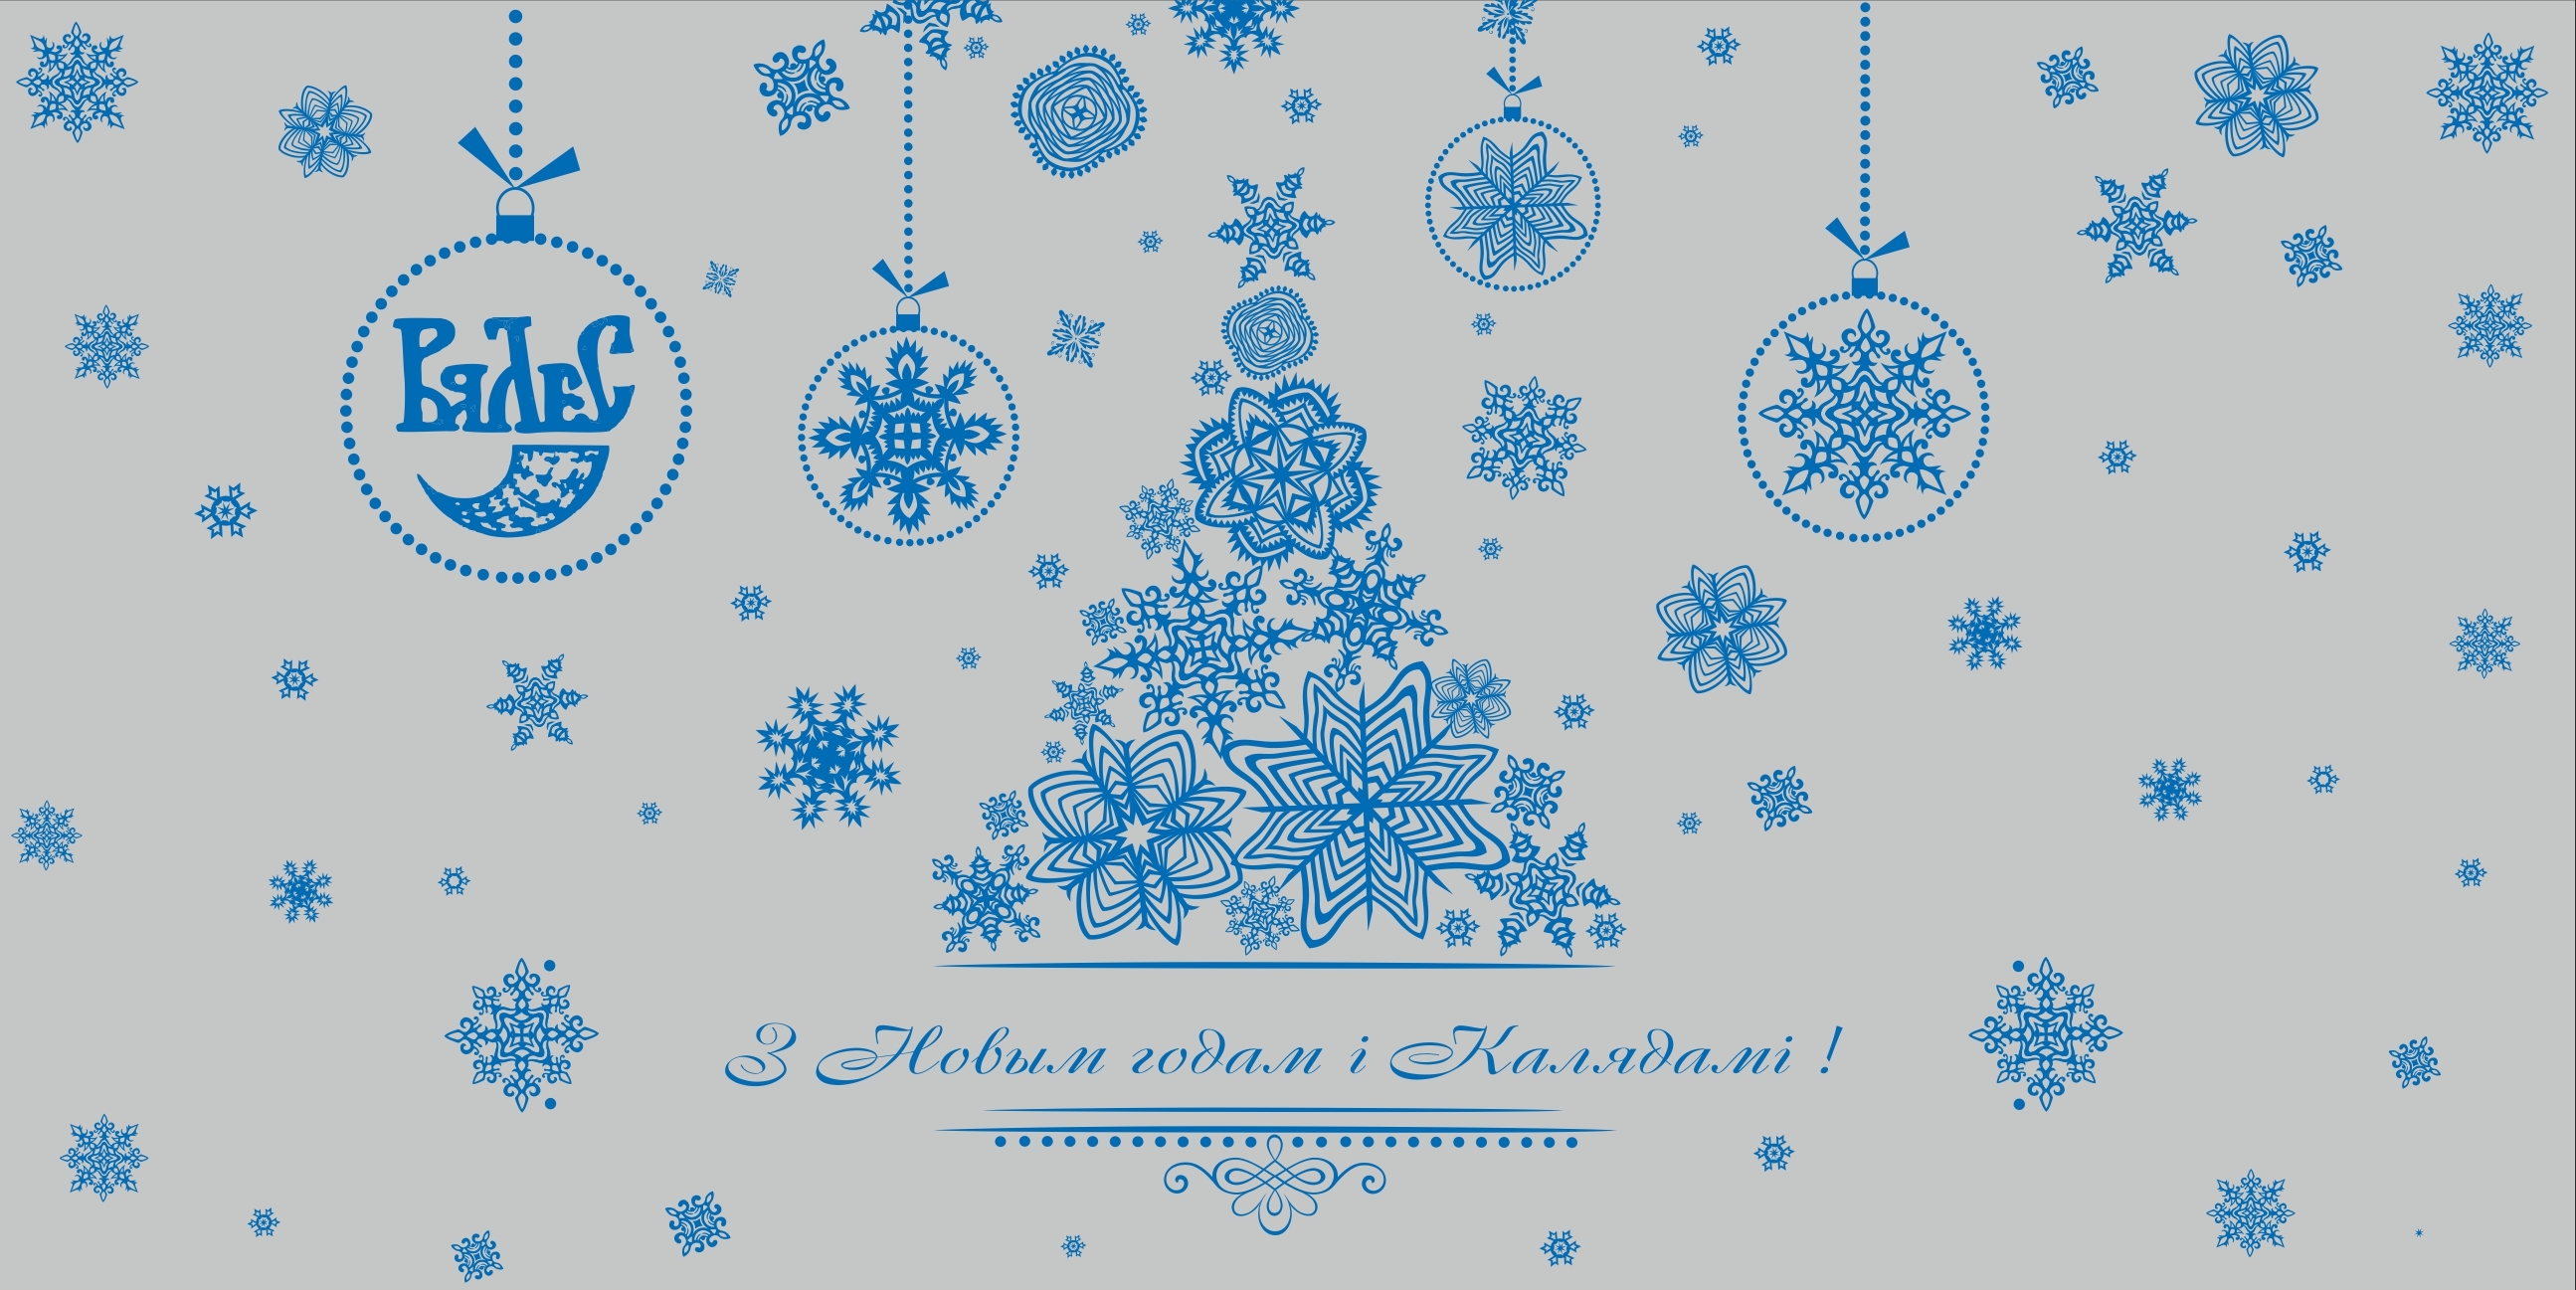 Новогоднее Поздравление На Белорусском Написано